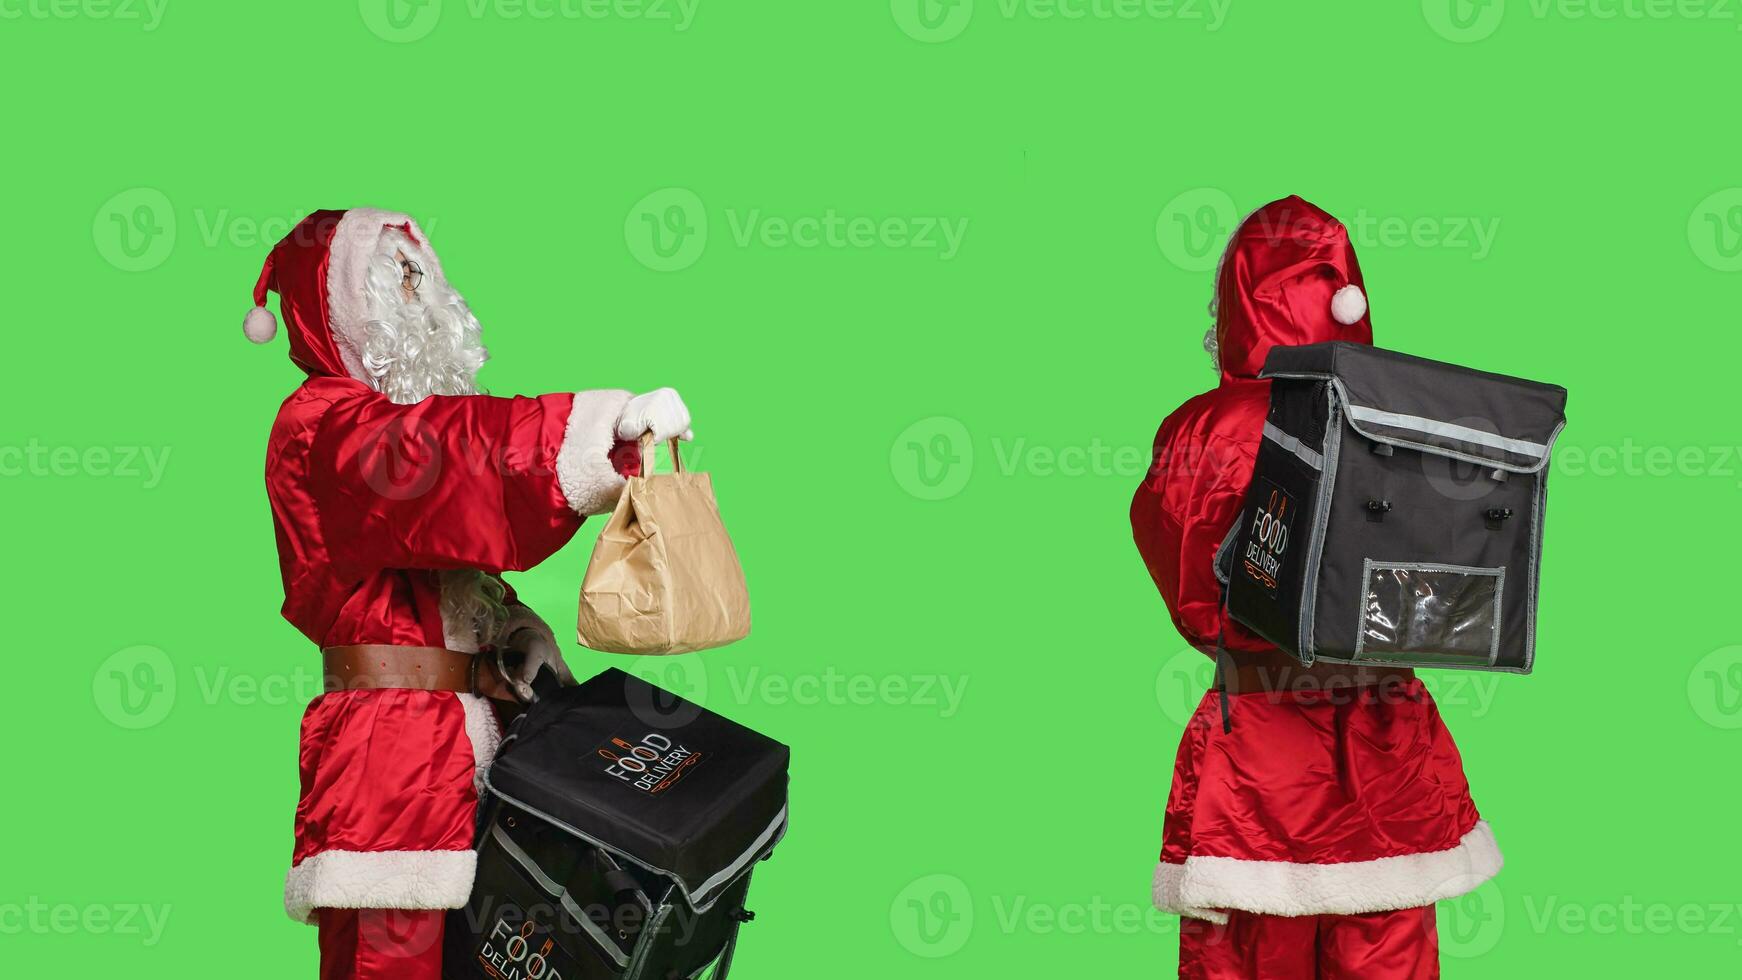 de fête homme dans Père Noël claus costume livrer nourriture avec papier sac, posant avec thermique sac à dos plus de écran vert toile de fond. la personne dans traditionnel vacances costume diffusion Noël esprit. photo